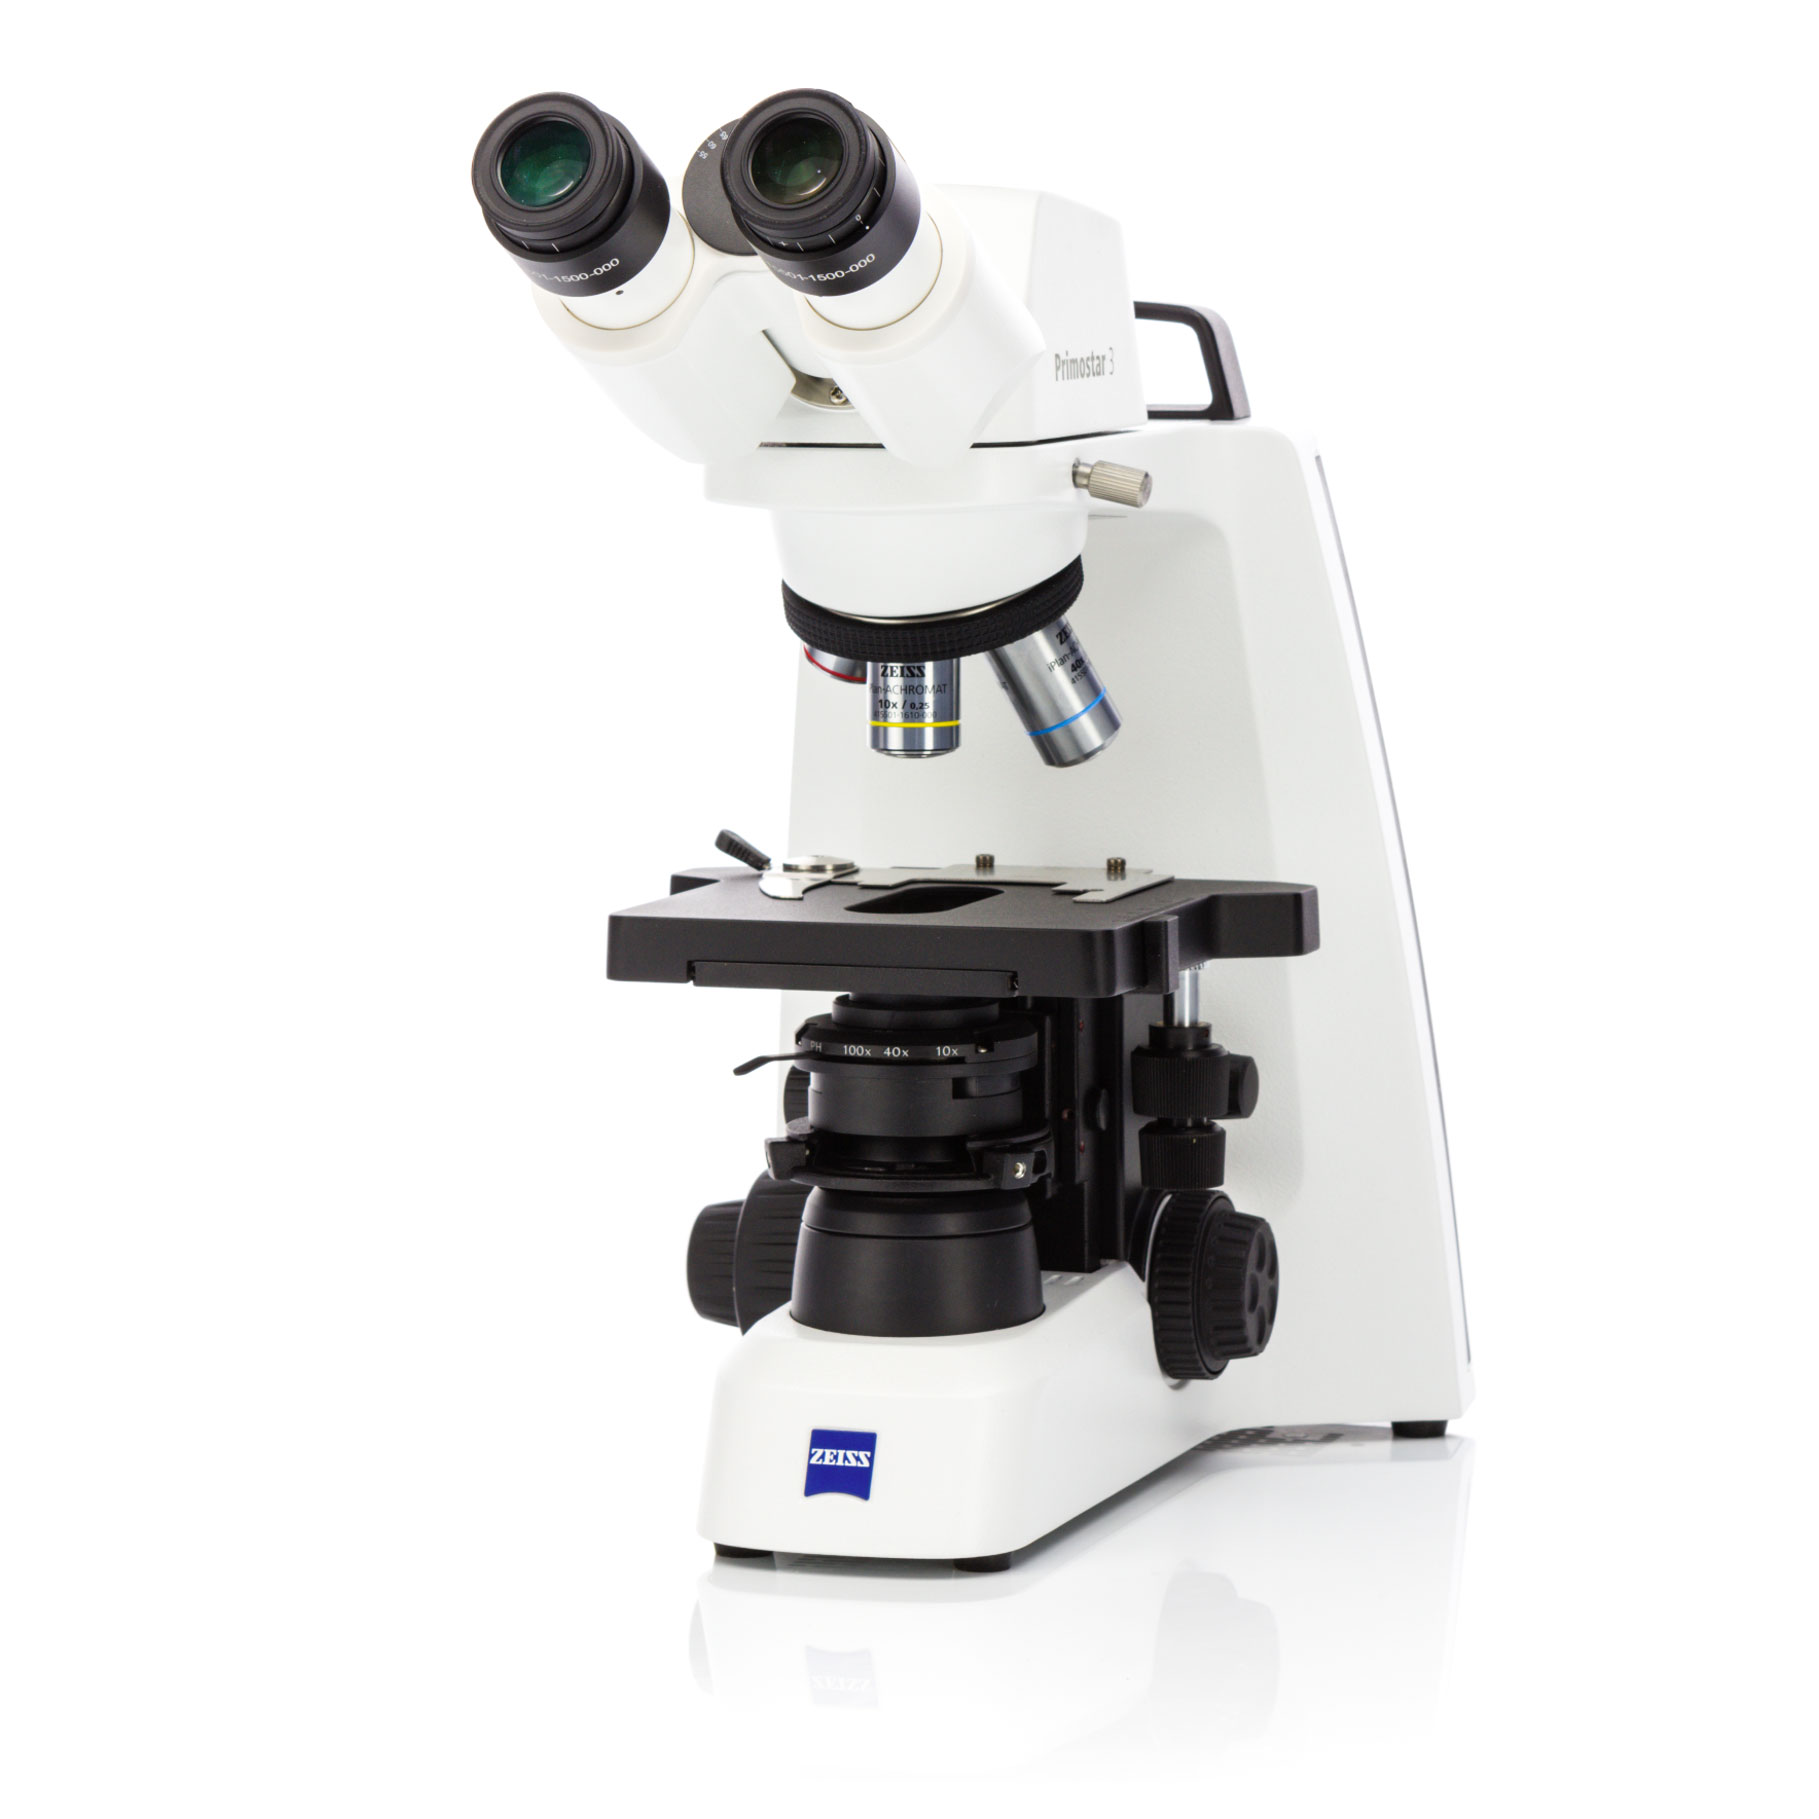 Mikroskop für digitalen Unterricht und Routinelabor